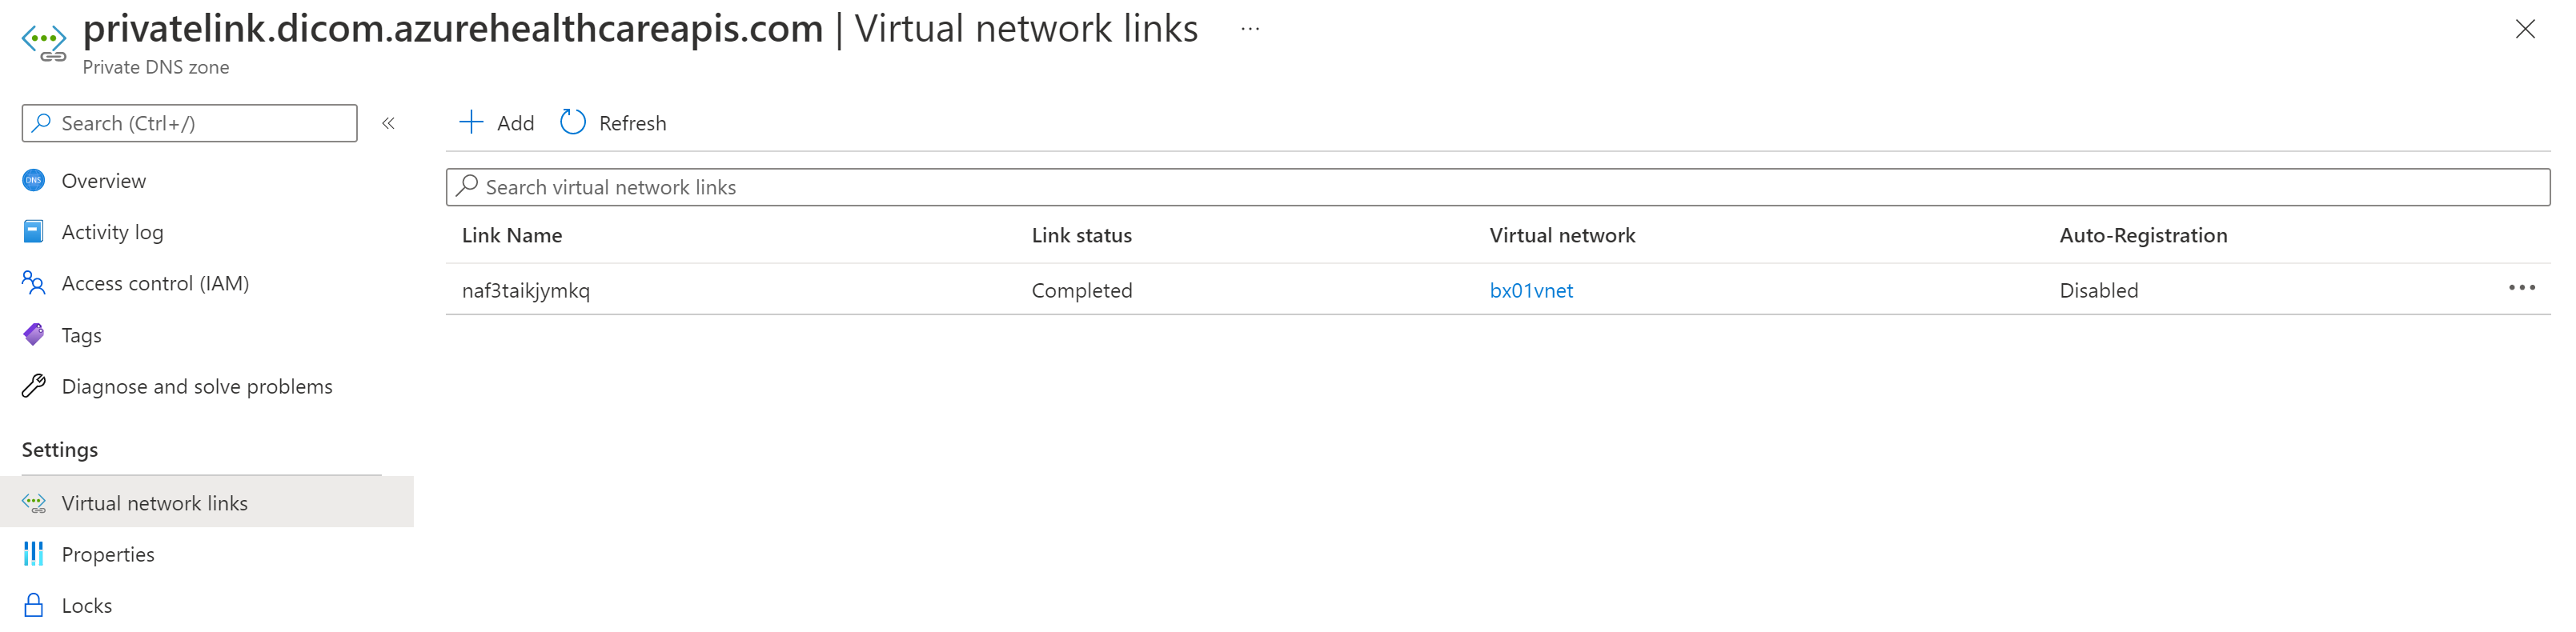 Capture d’écran montrant l’image d’une liaison de réseau virtuel Private Link DICOM.